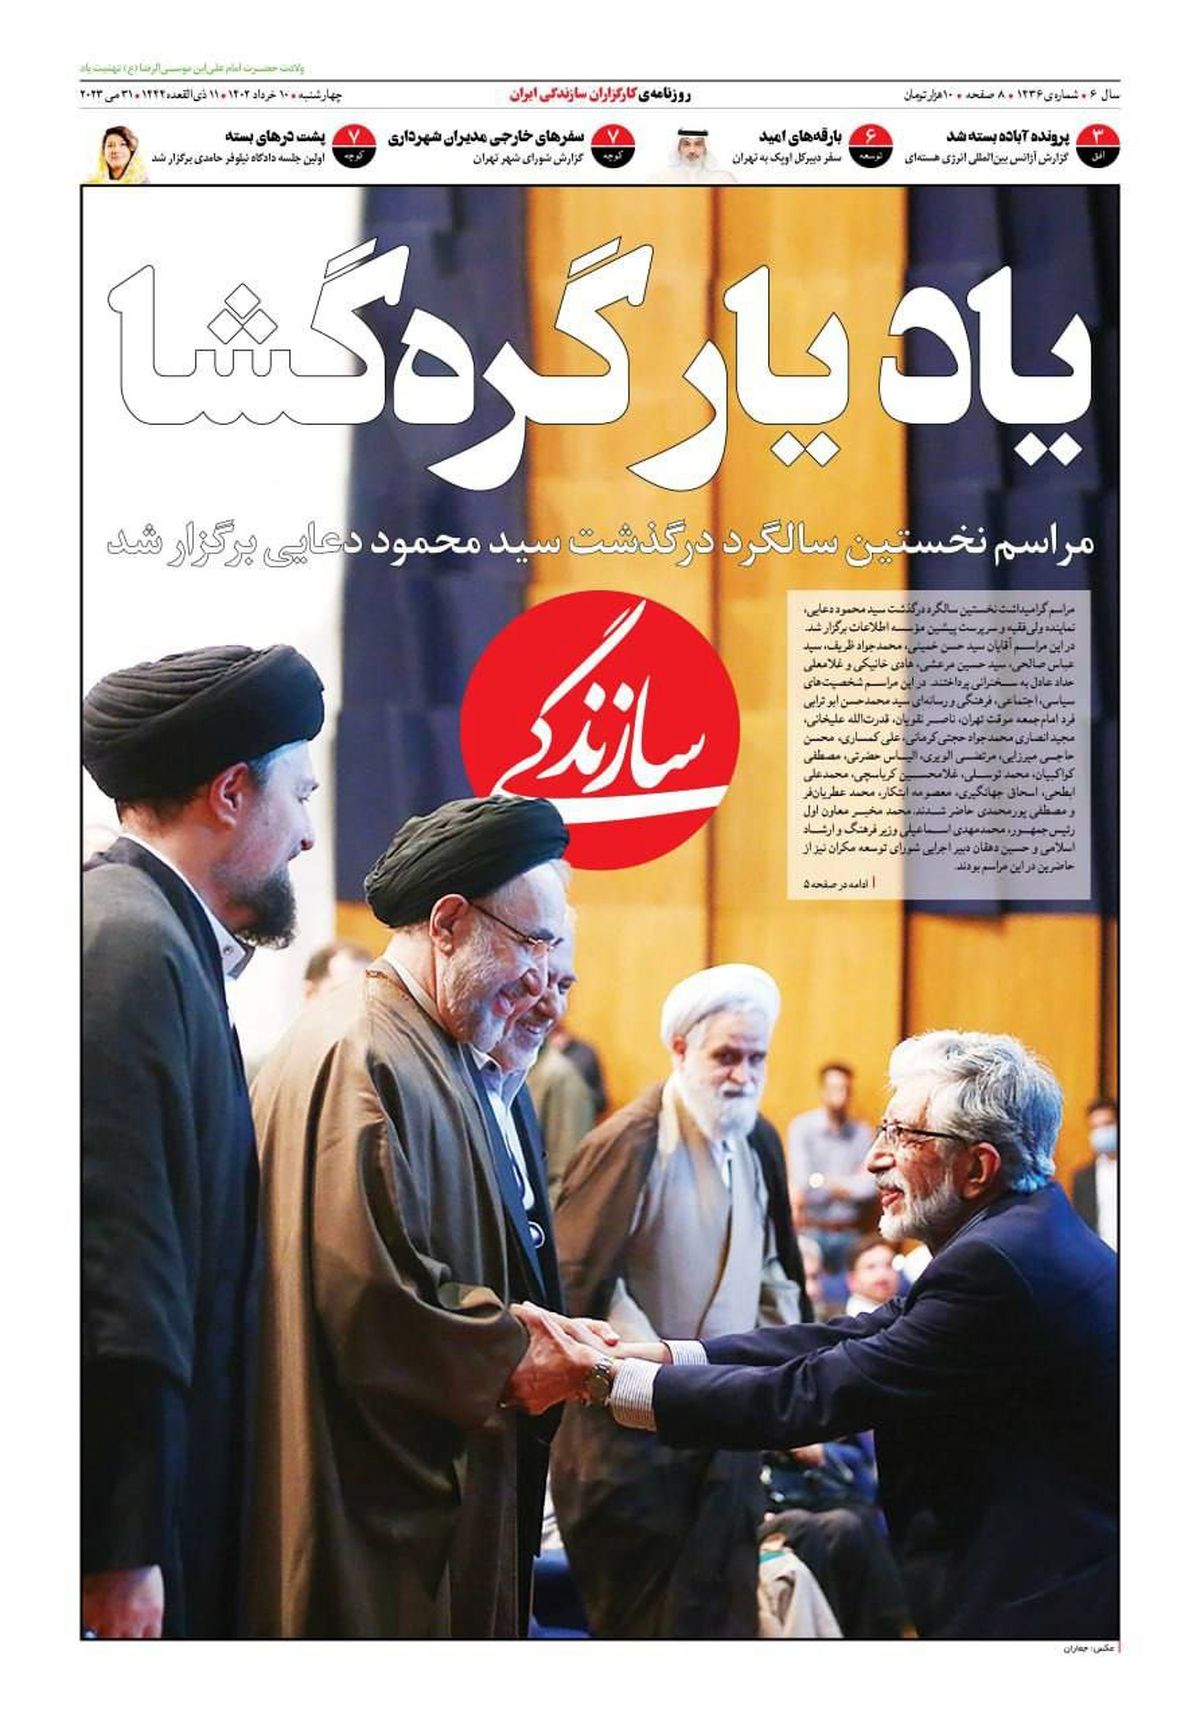 تصویری جالب از خاتمی و حداد عادل روی جلد یک روزنامه